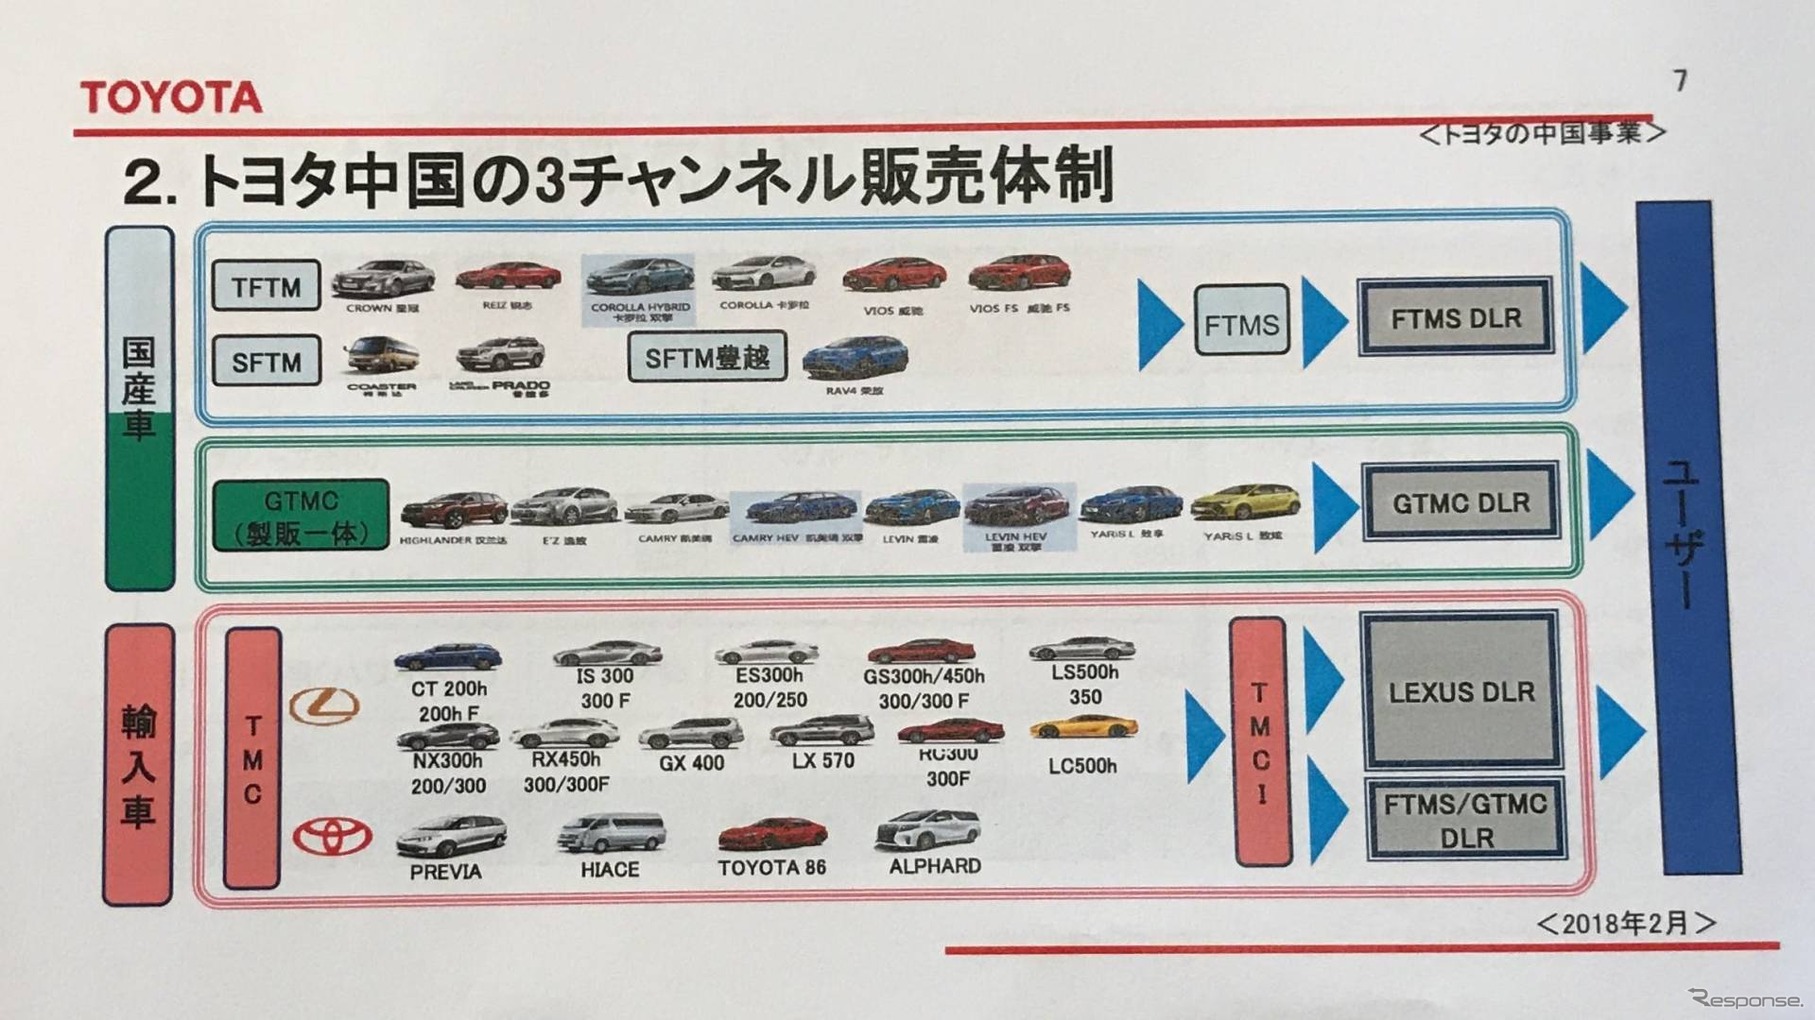 トヨタの製販体制。一汽トヨタ、広汽トヨタ、レクサス（輸入）の3チャネル体制。